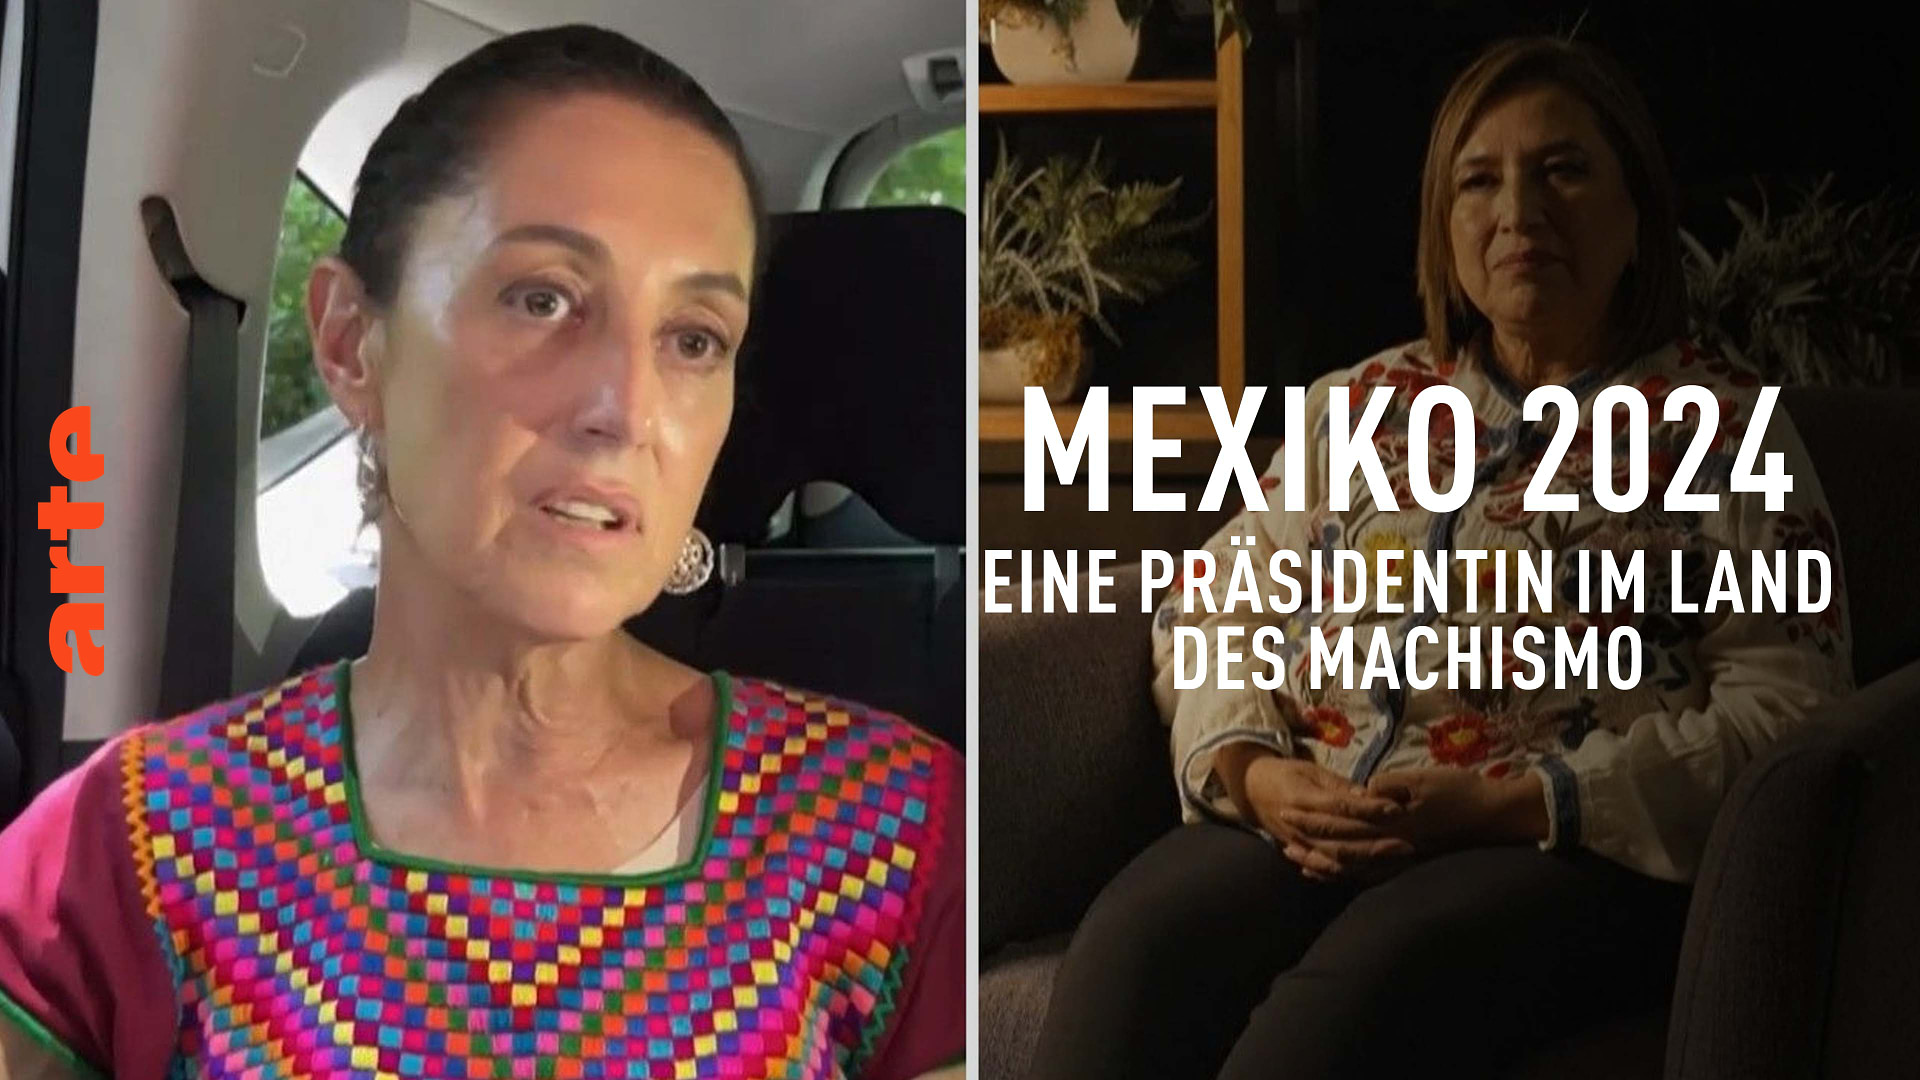 Mexiko 2024: Eine Präsidentin im Land des Machismo